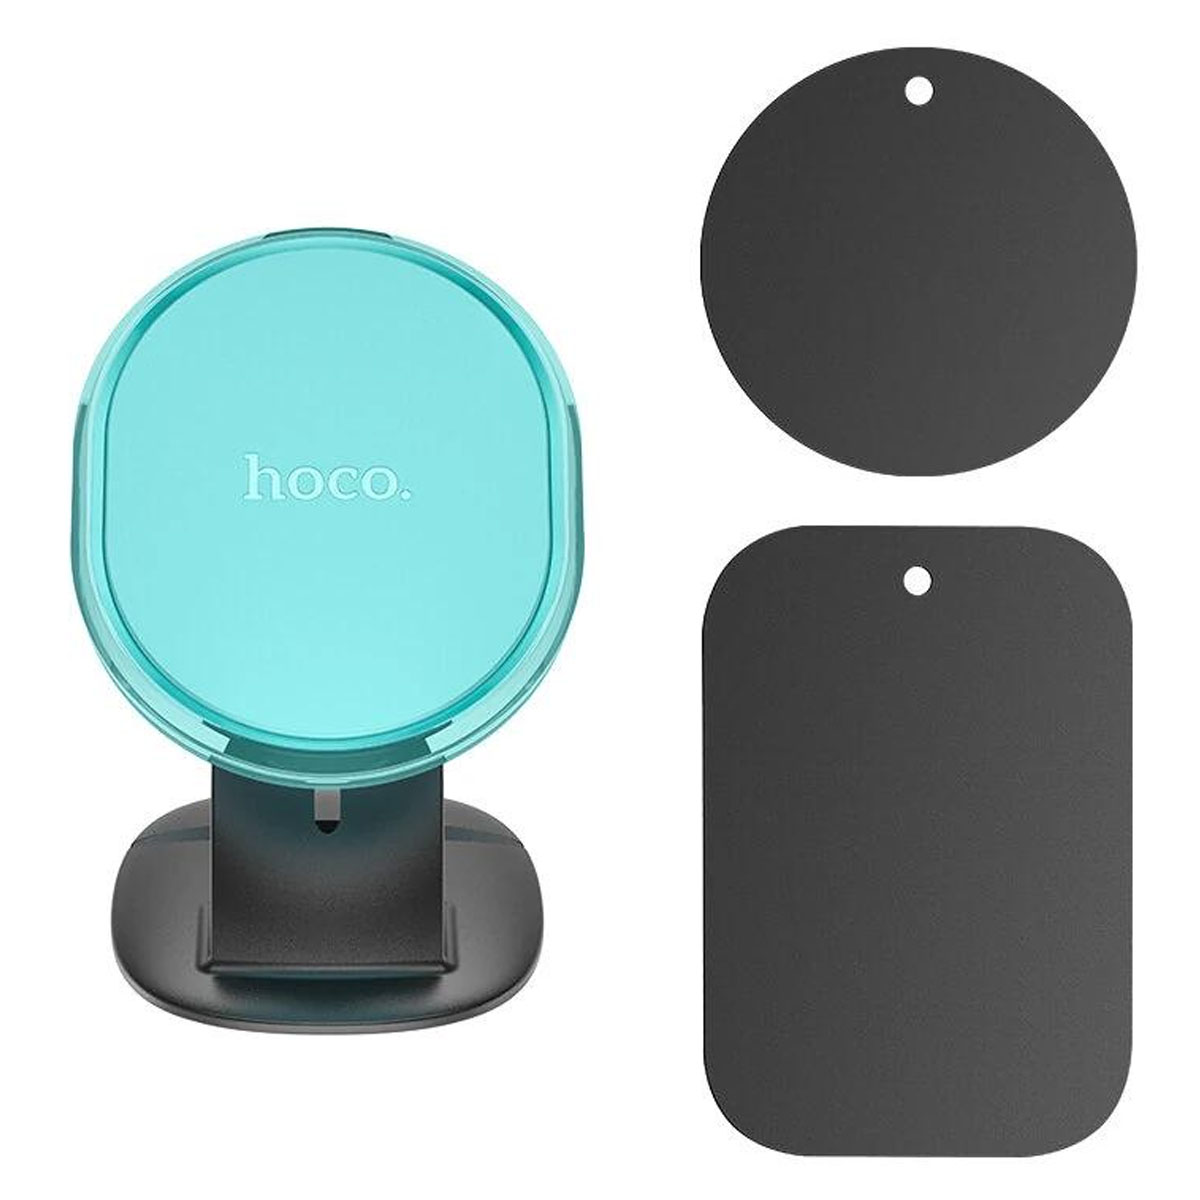 Автомобильный магнитный держатель HOCO H2 Crystal magnetic car holder для смартфона, на панель, цвет бирюзовый